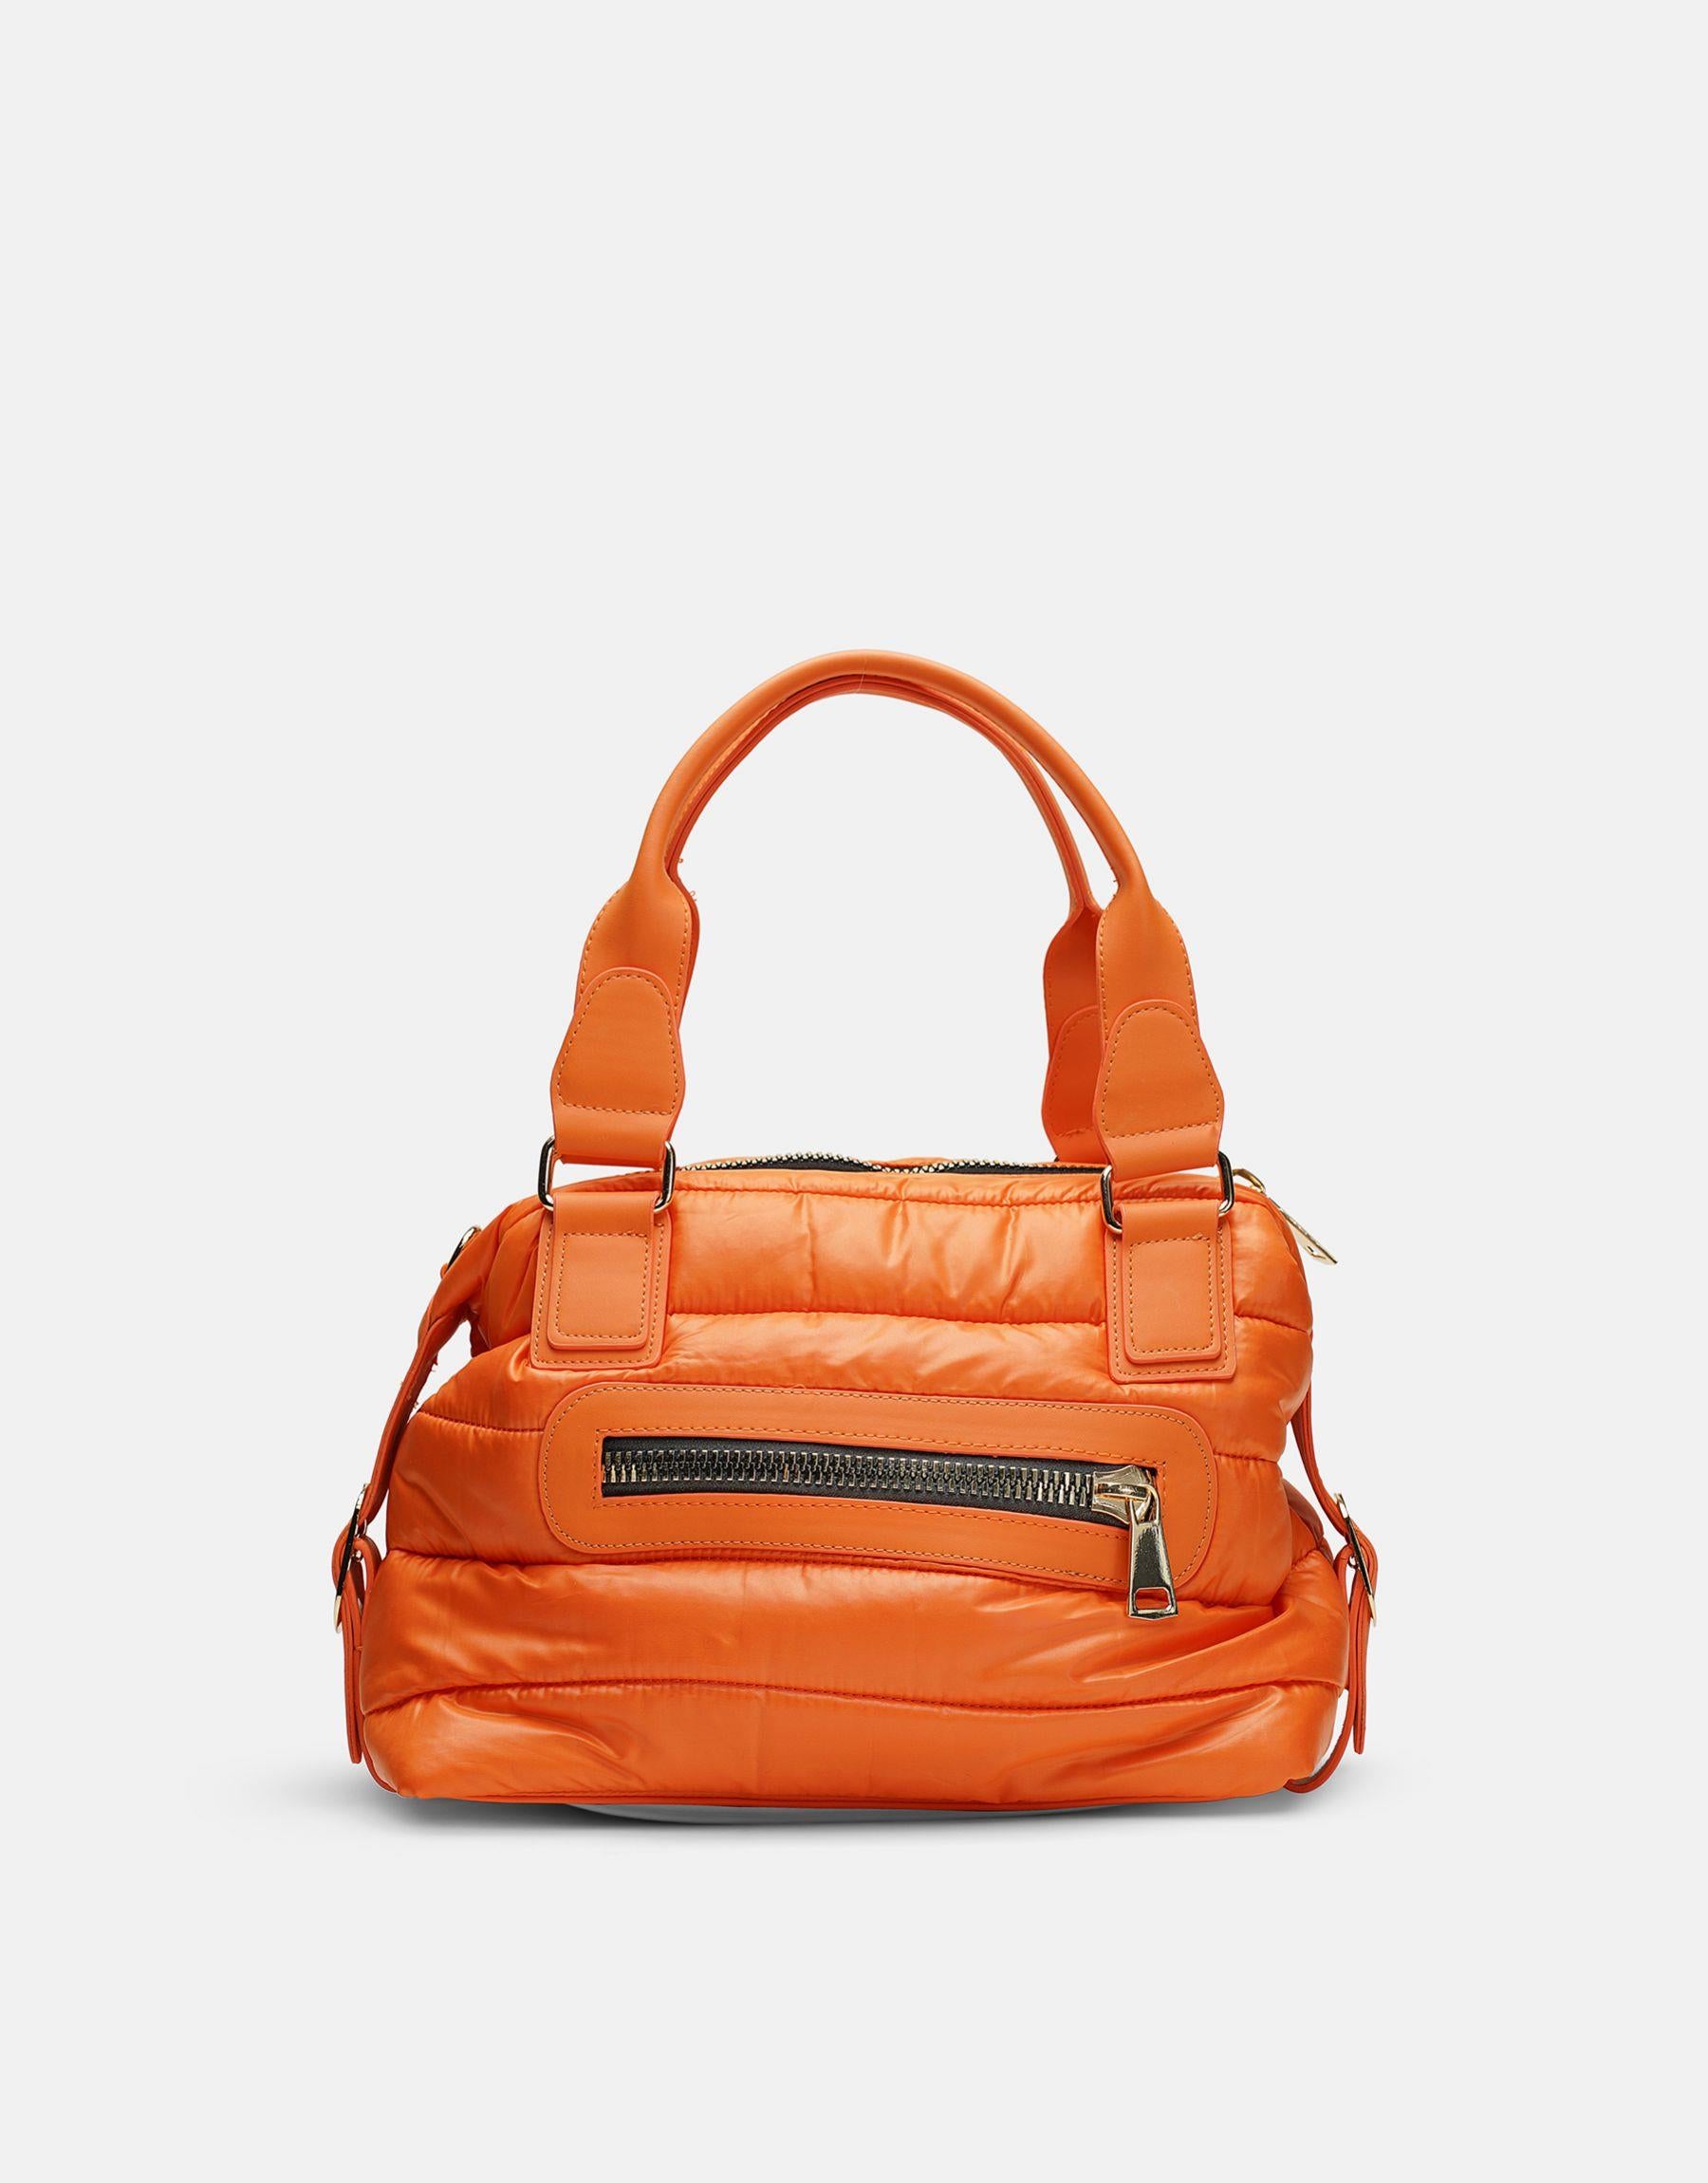 Theon Fallschirm-Gewebe Frauenhandtasche |Orange